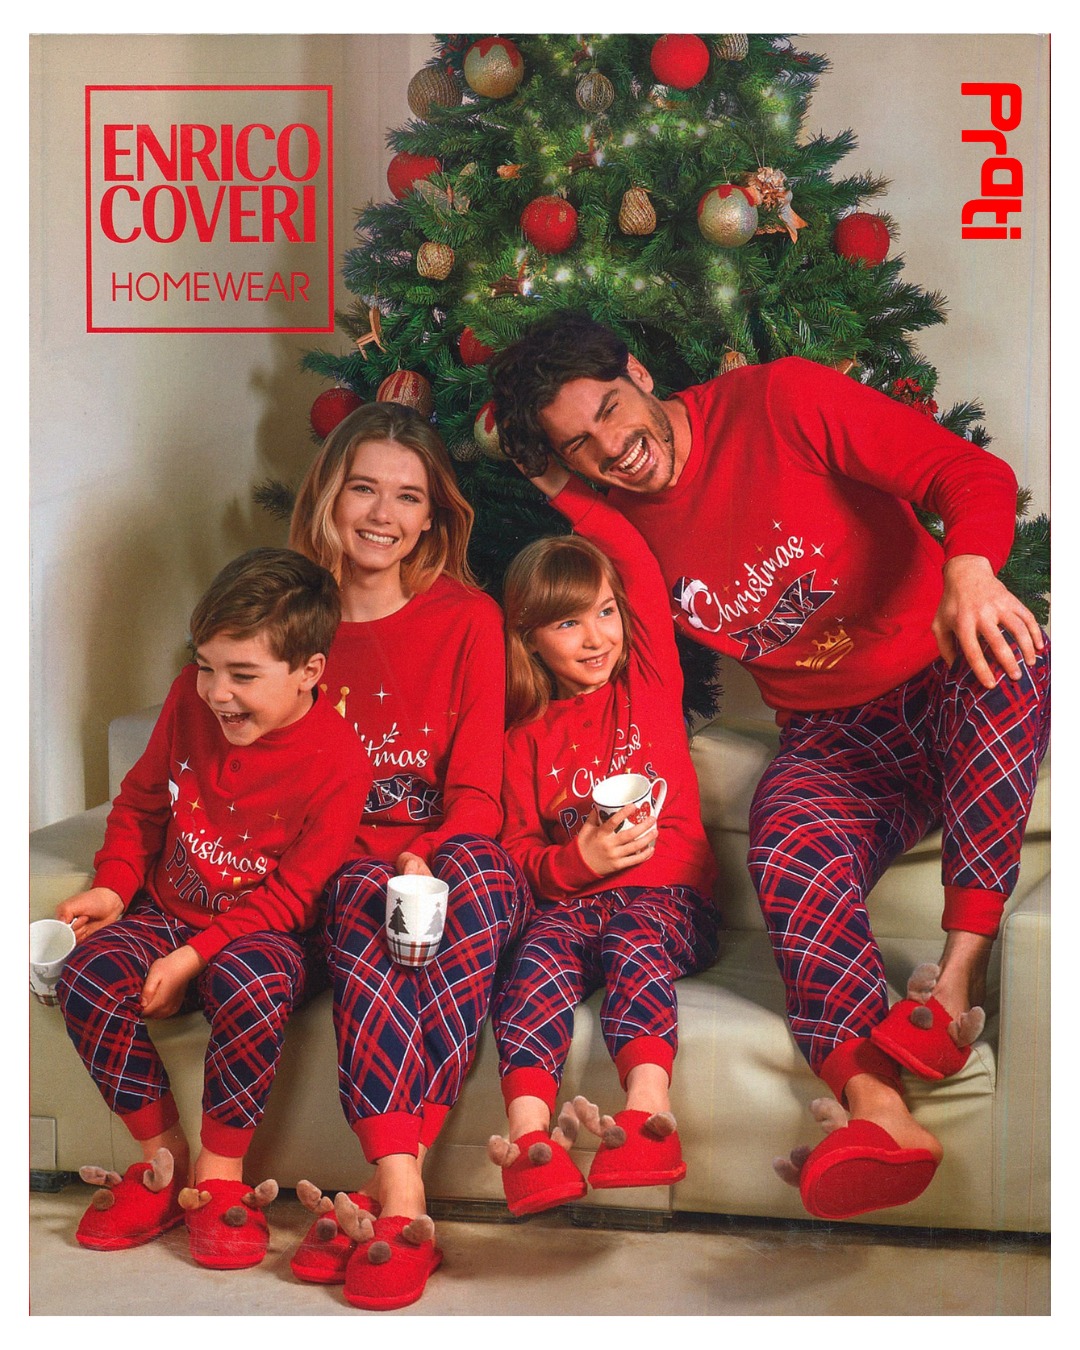 Pigiami natalizi per tutta la famiglia quest'anno con #Coveri 🎅
Vi aspettiamo in magazzino dal lunedì al venerdì dalle 8:30 alle 18:00.
Per info 0543 796500 ☎️ 
°
°
°
#prati_ingrosso #pratispa #pajamas #loungewear #pigiama #christmas #pijama #pyjamas #pyjama #moda #menstyle #fashion #familychristmas #newcollection #pinterest #fashionista #womensfashion #instastyle #instafashion #pigiamafamiglia #like #outfitoftheday #shopping #pigiamanatalizio #pigiamanatale #ingrosso #famiglia #uomo #pigiamauomo